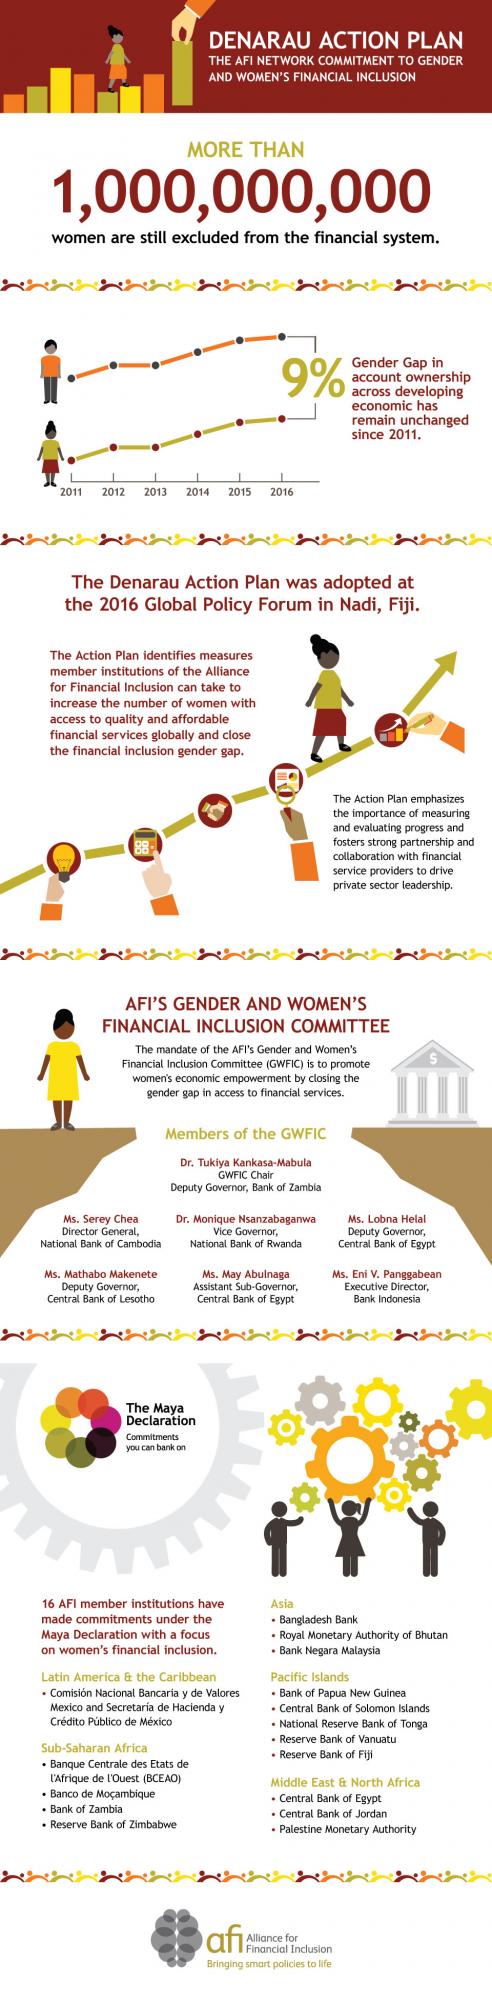 170915_afi-001_gender-infographic (1)_0.jpg